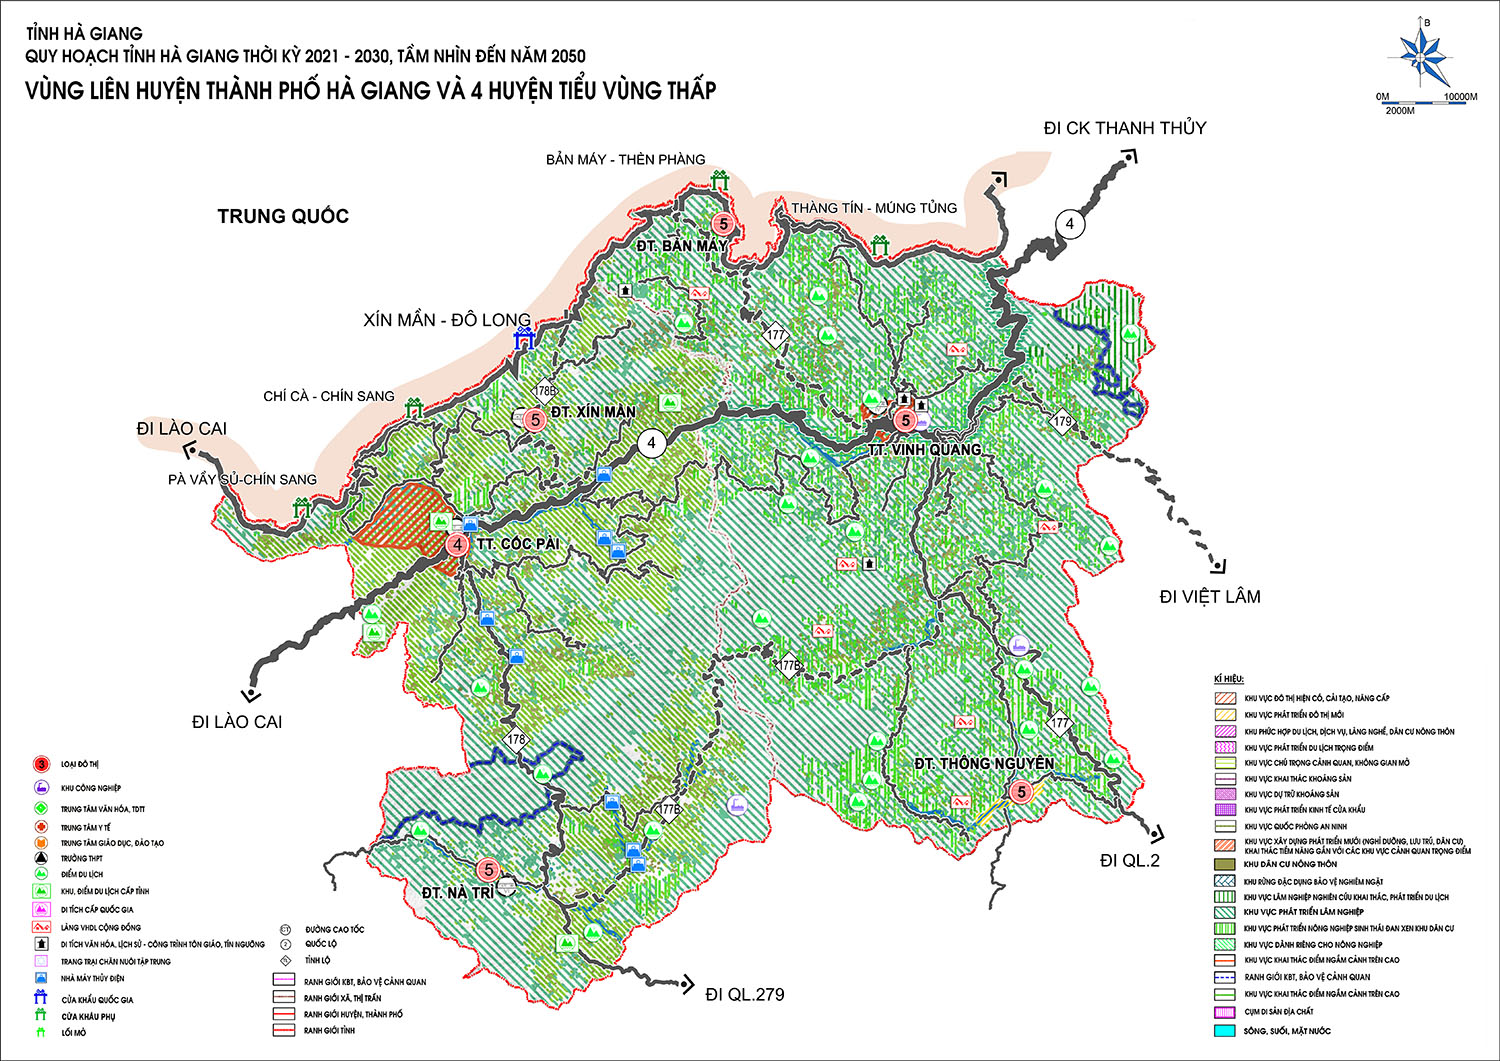 Quy hoạch vùng liên huyện Cao nguyên đá Đồng Văn (tiểu vùng cao núi đá phía Bắc) tỉnh Hà Giang